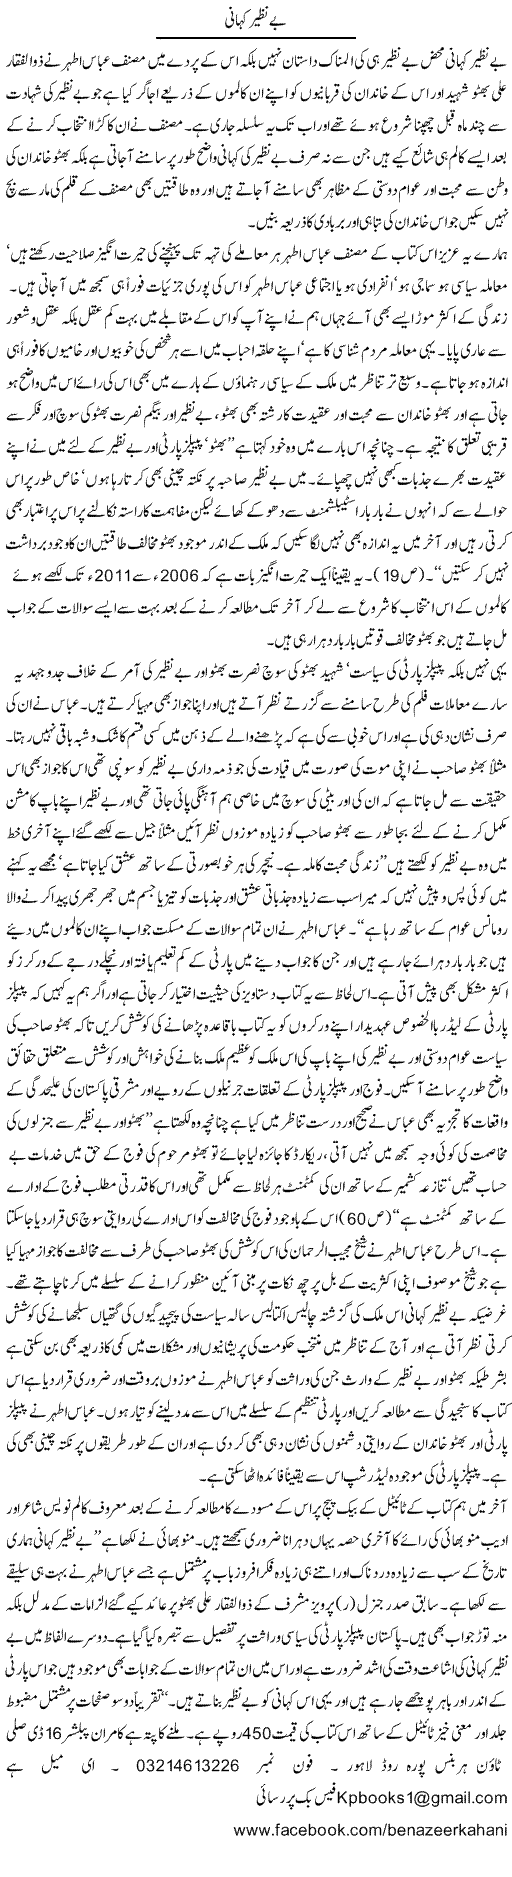 Benazir Express Column Hameed Akhtar 29 April 2011